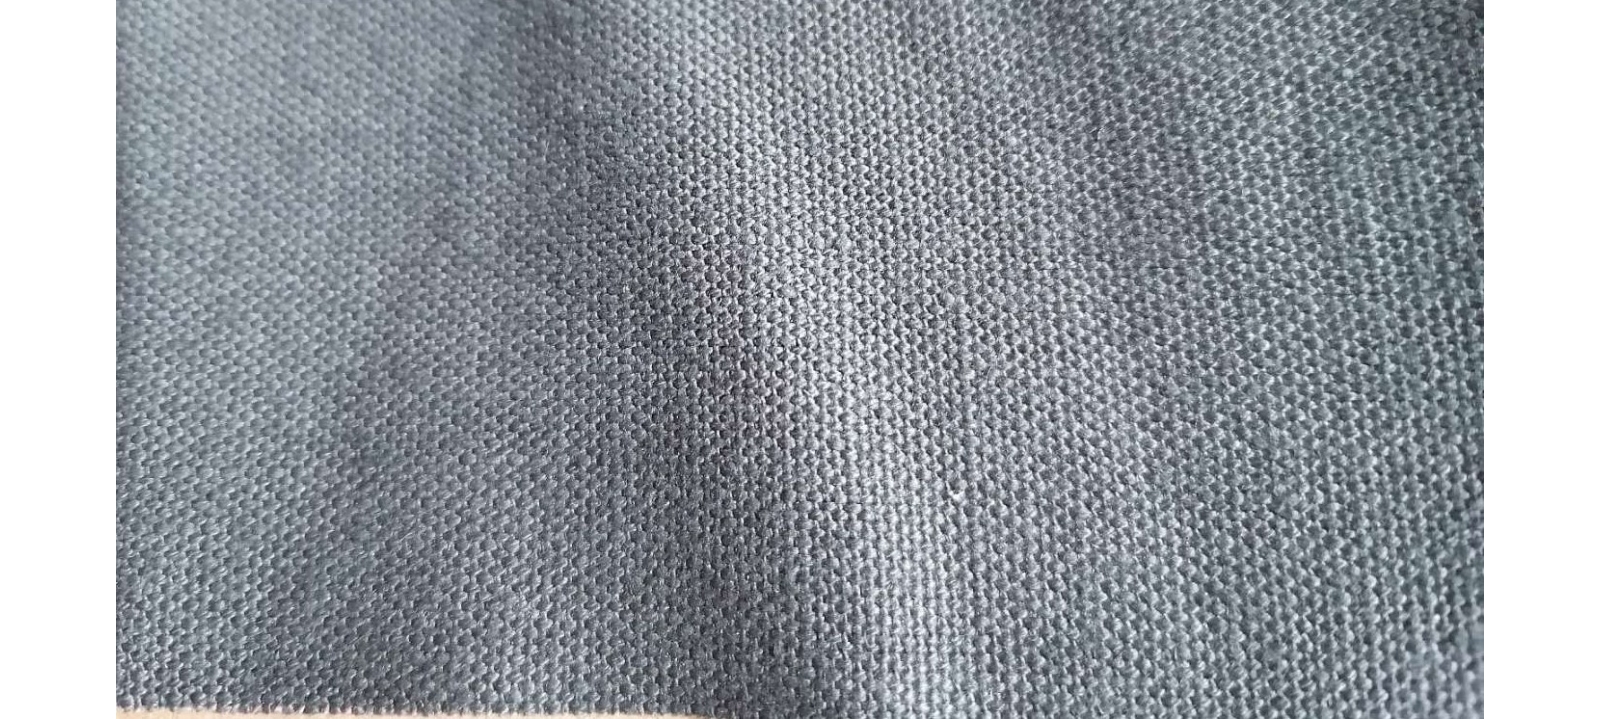 HOCL11241 hemp/organic cotton fabric